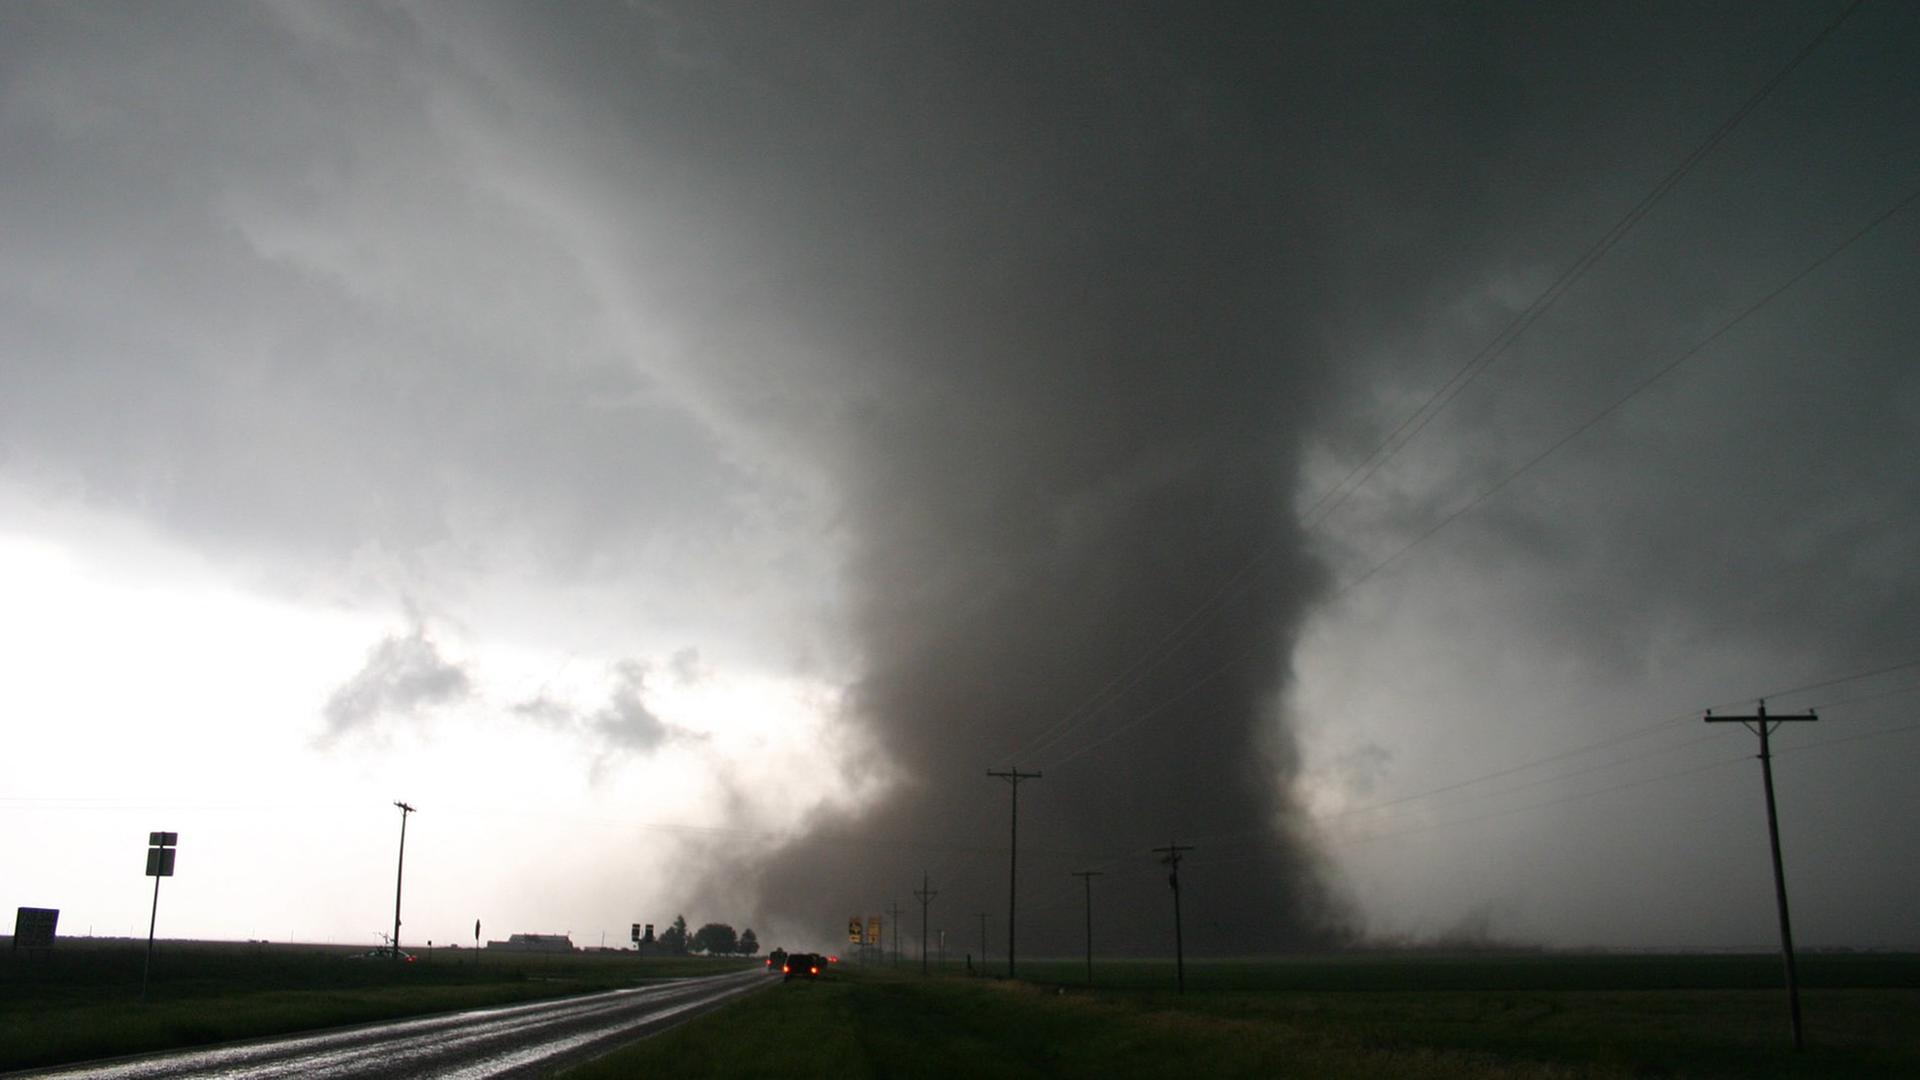 Blick auf einen Tornado in der Nähe von Sount Plains in Texas (12.05.2005).